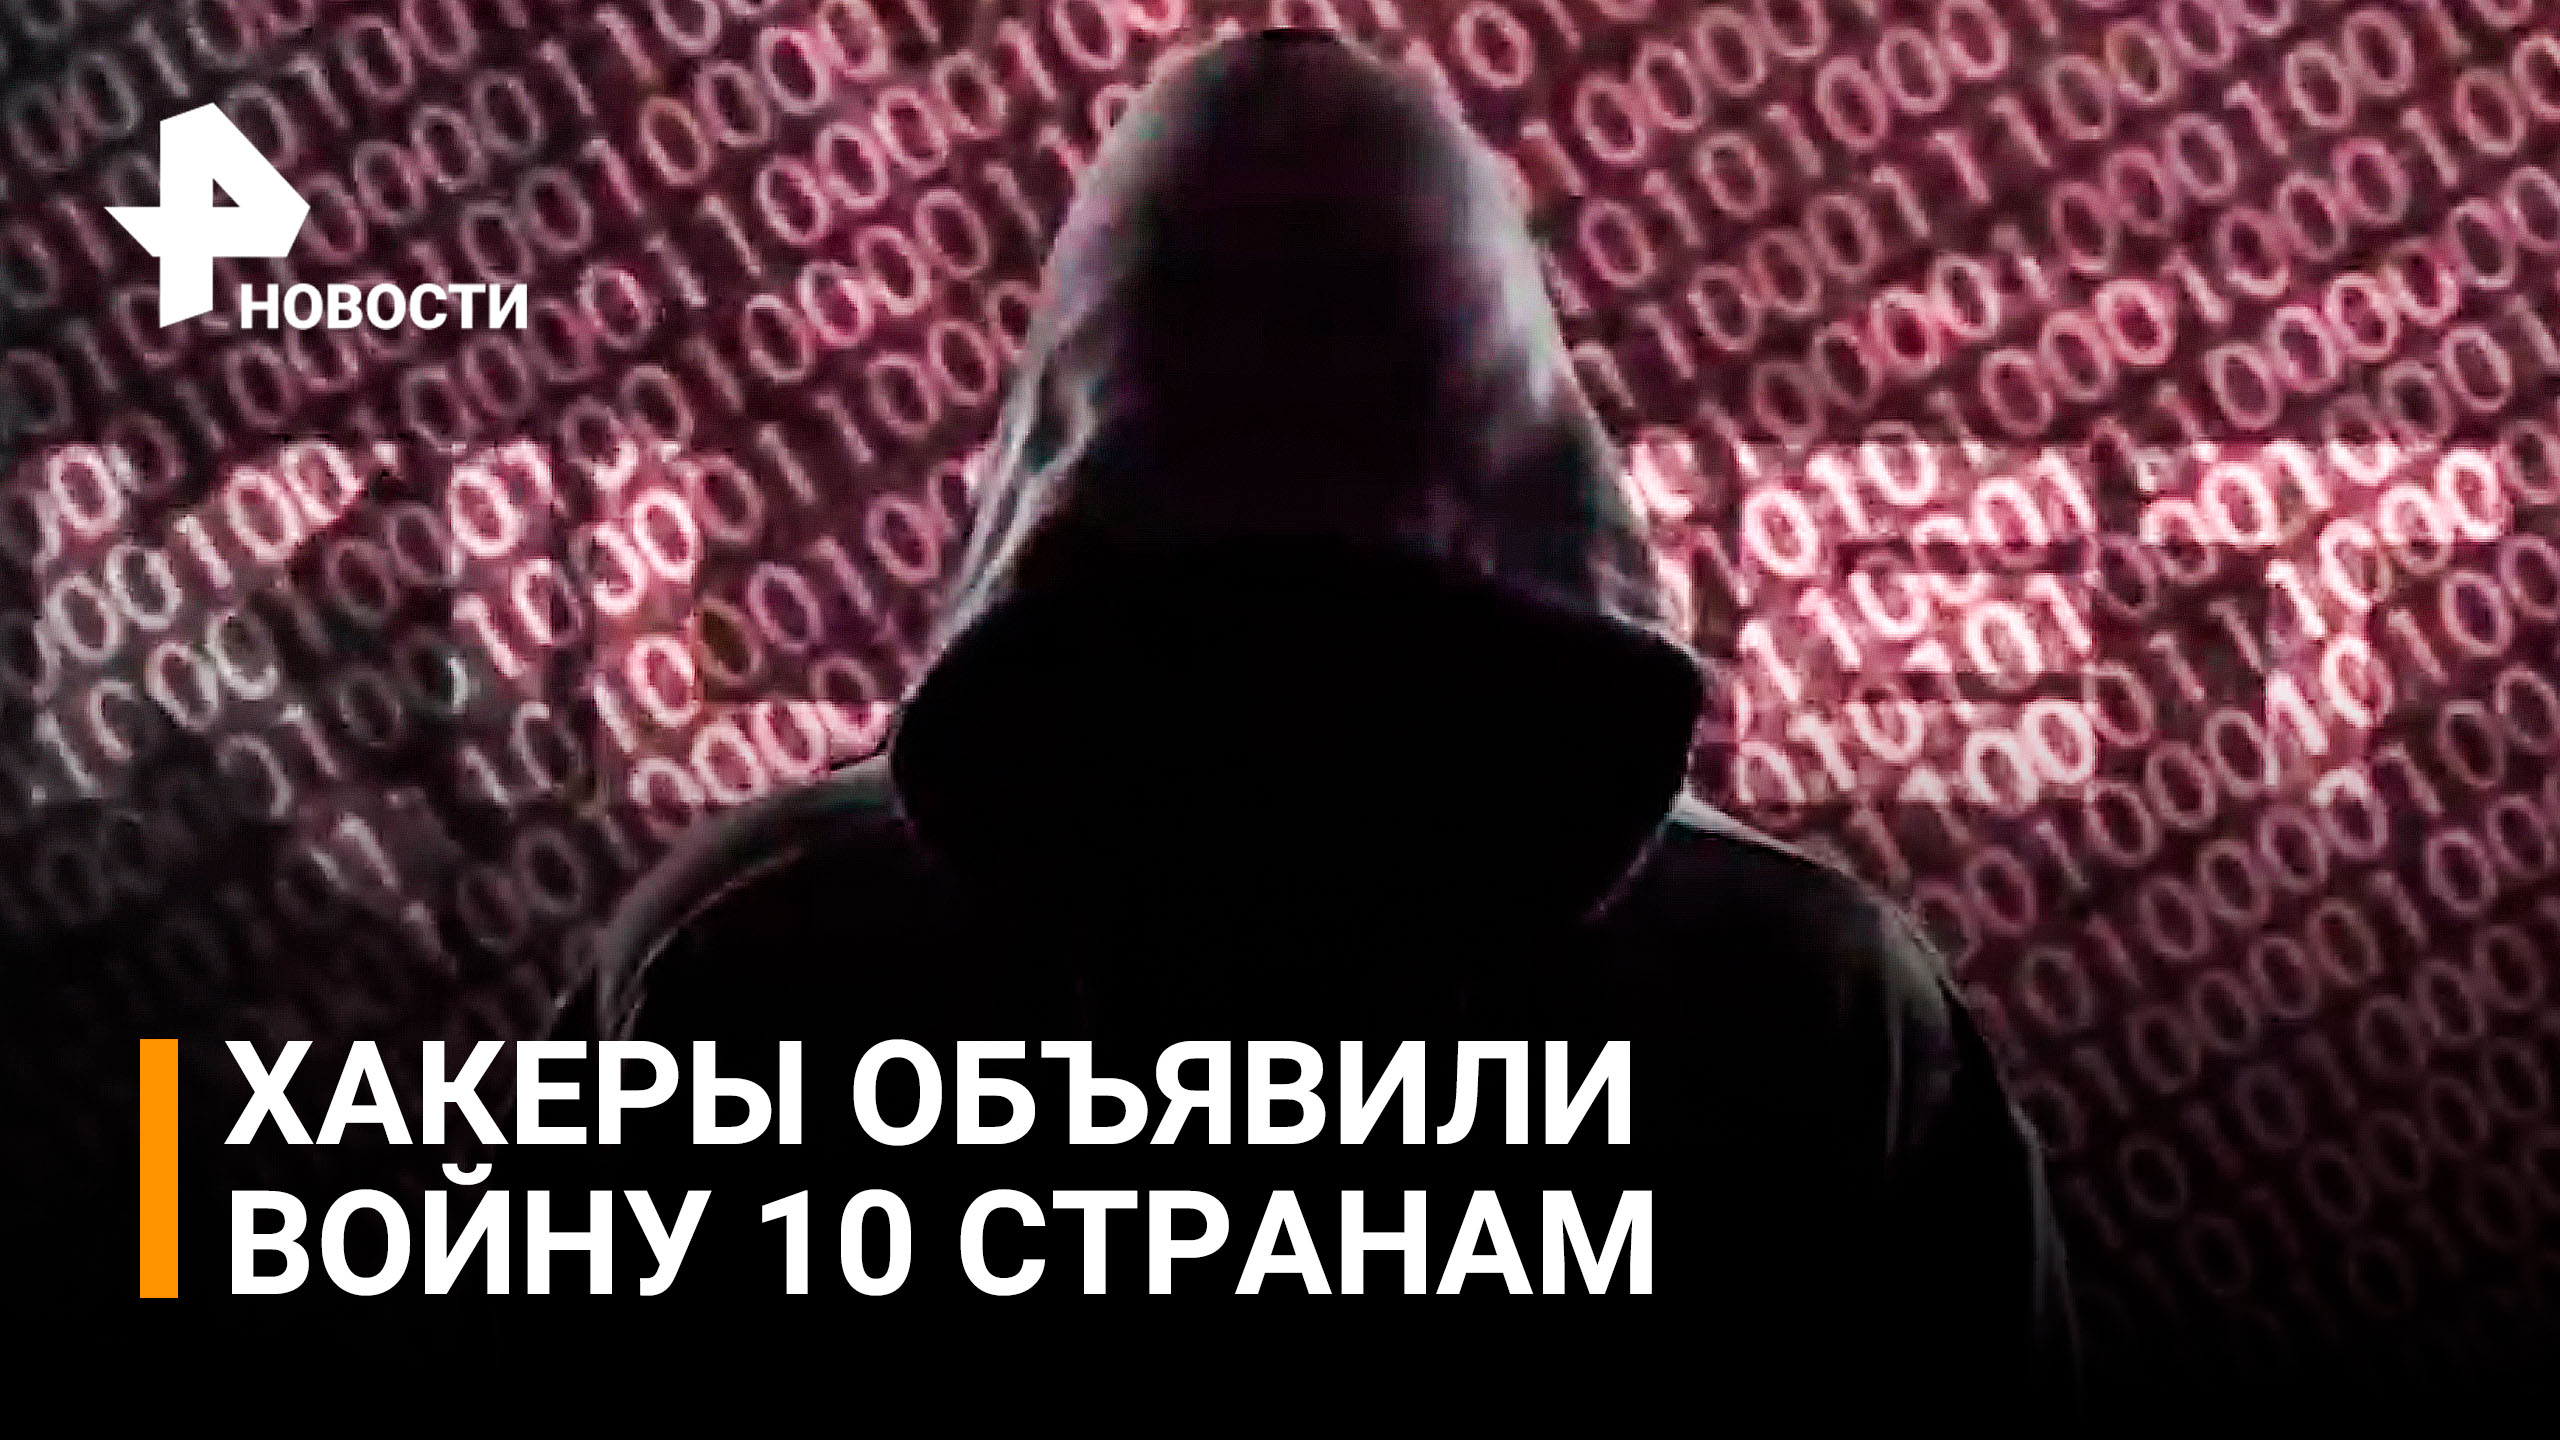 Хакеры Killnet объявили кибервойну властям 10 стран, поддерживающих русофобию / РЕН Новости